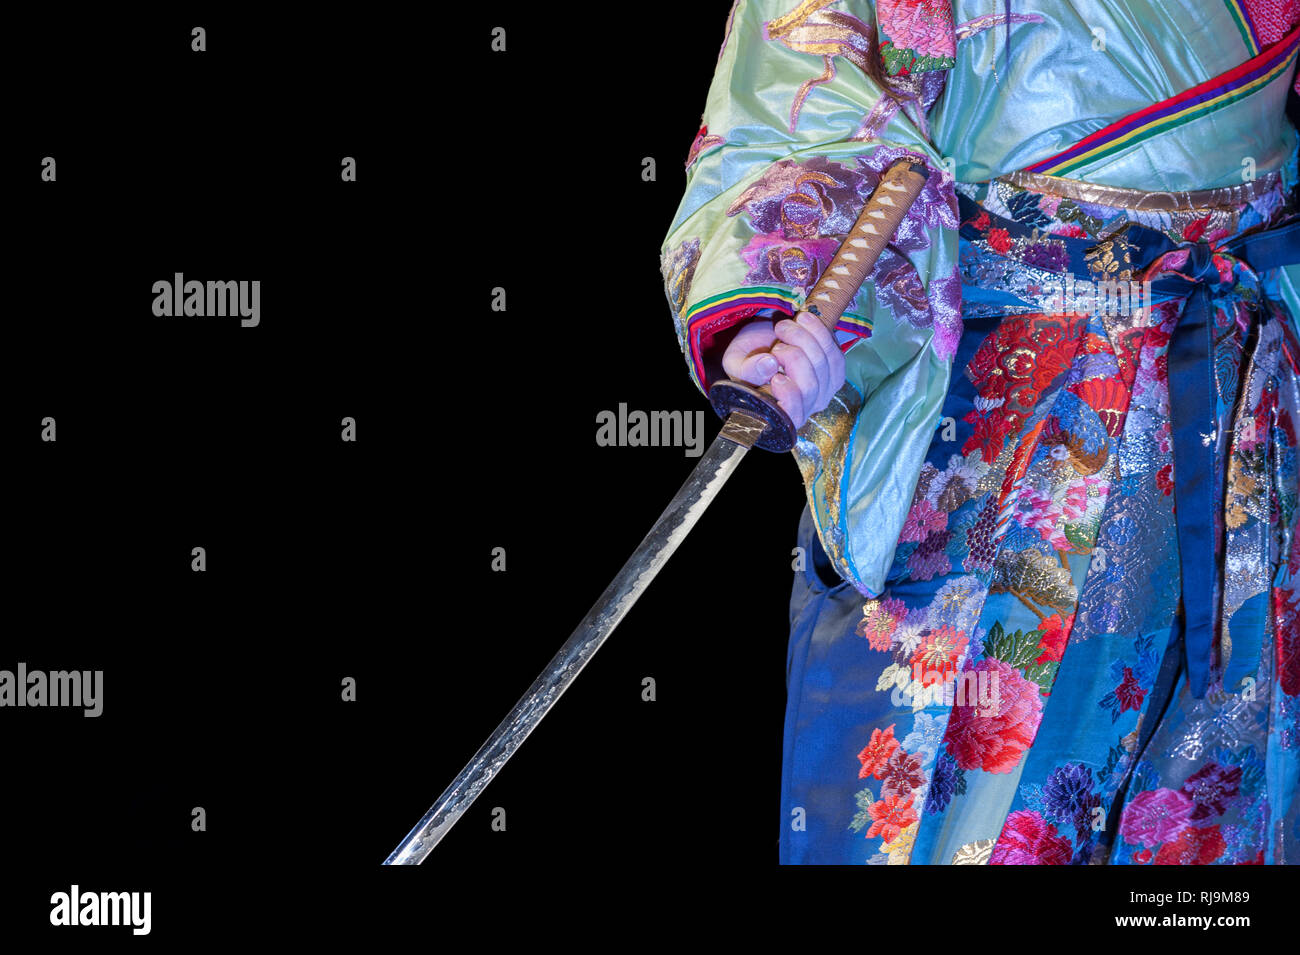 Danseuse japonaise avec kimono multicolore et katana sword, lors d'un spectacle. Banque D'Images